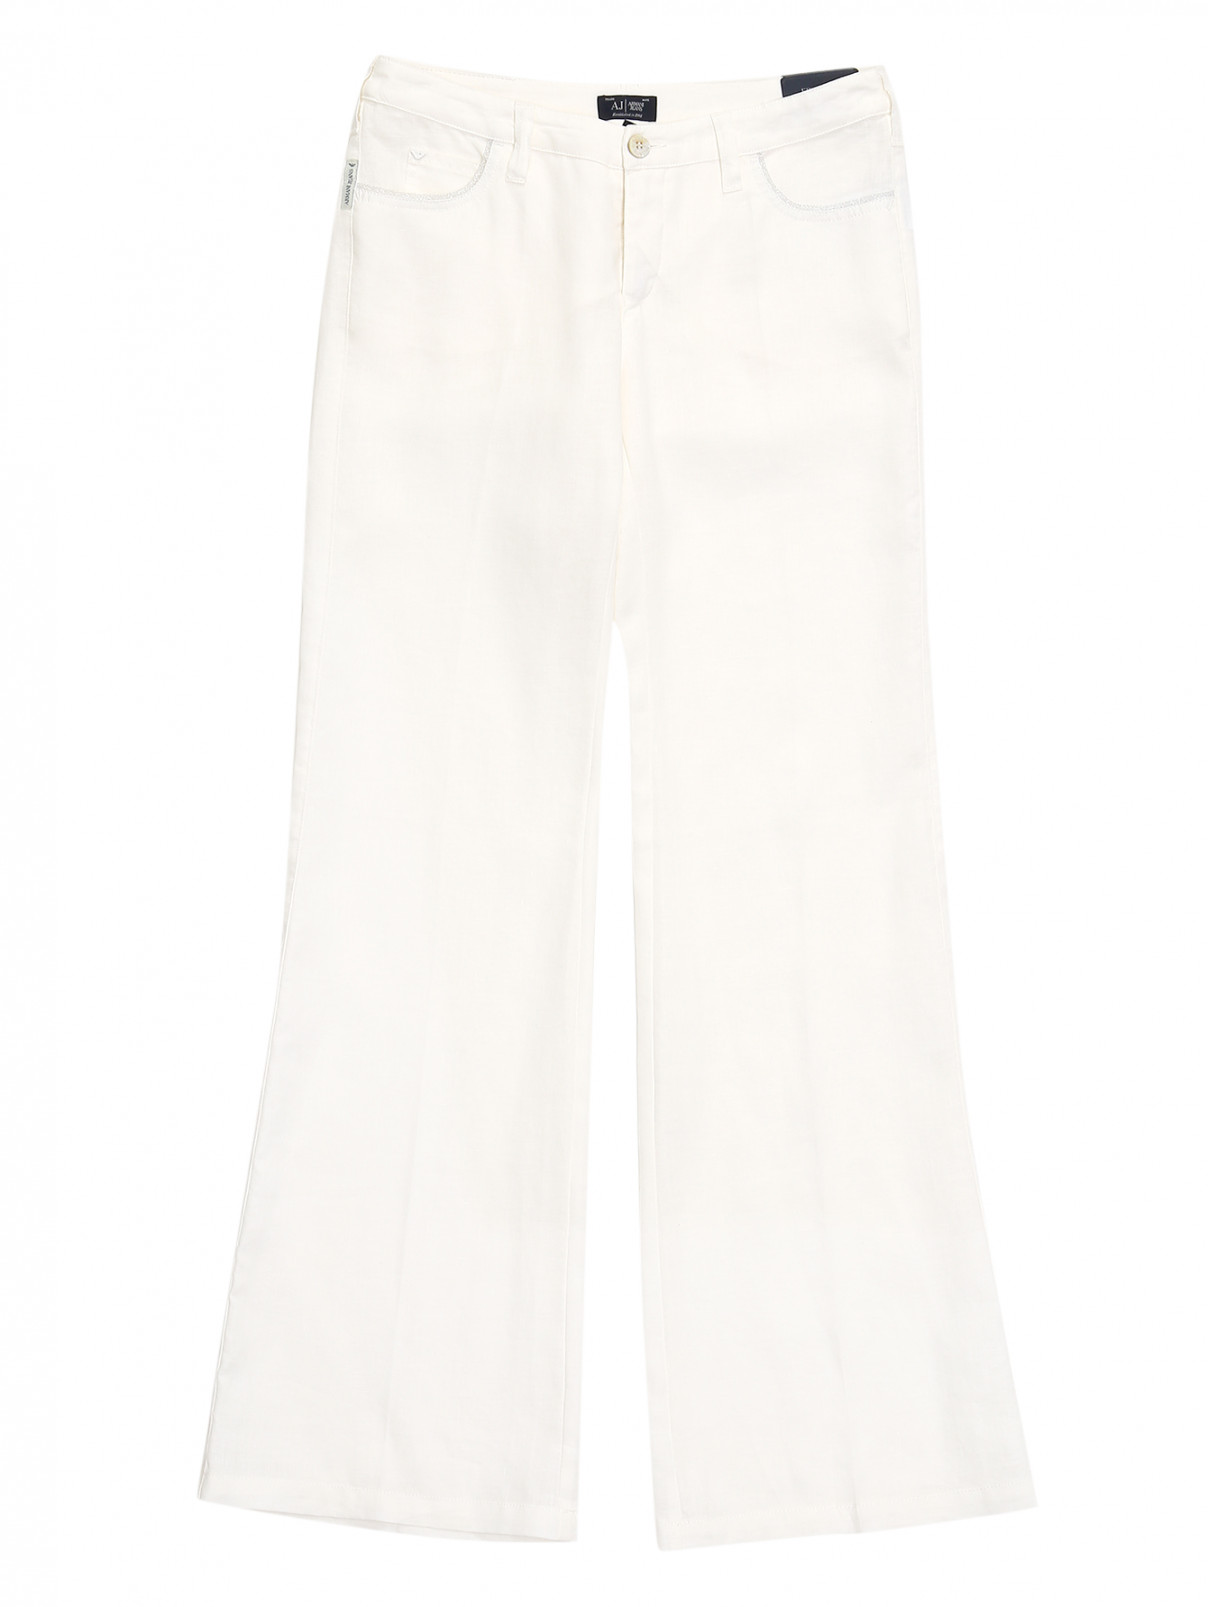 Льняные брюки-трубы с отделкой на карманах Armani Jeans  –  Общий вид  – Цвет:  Белый